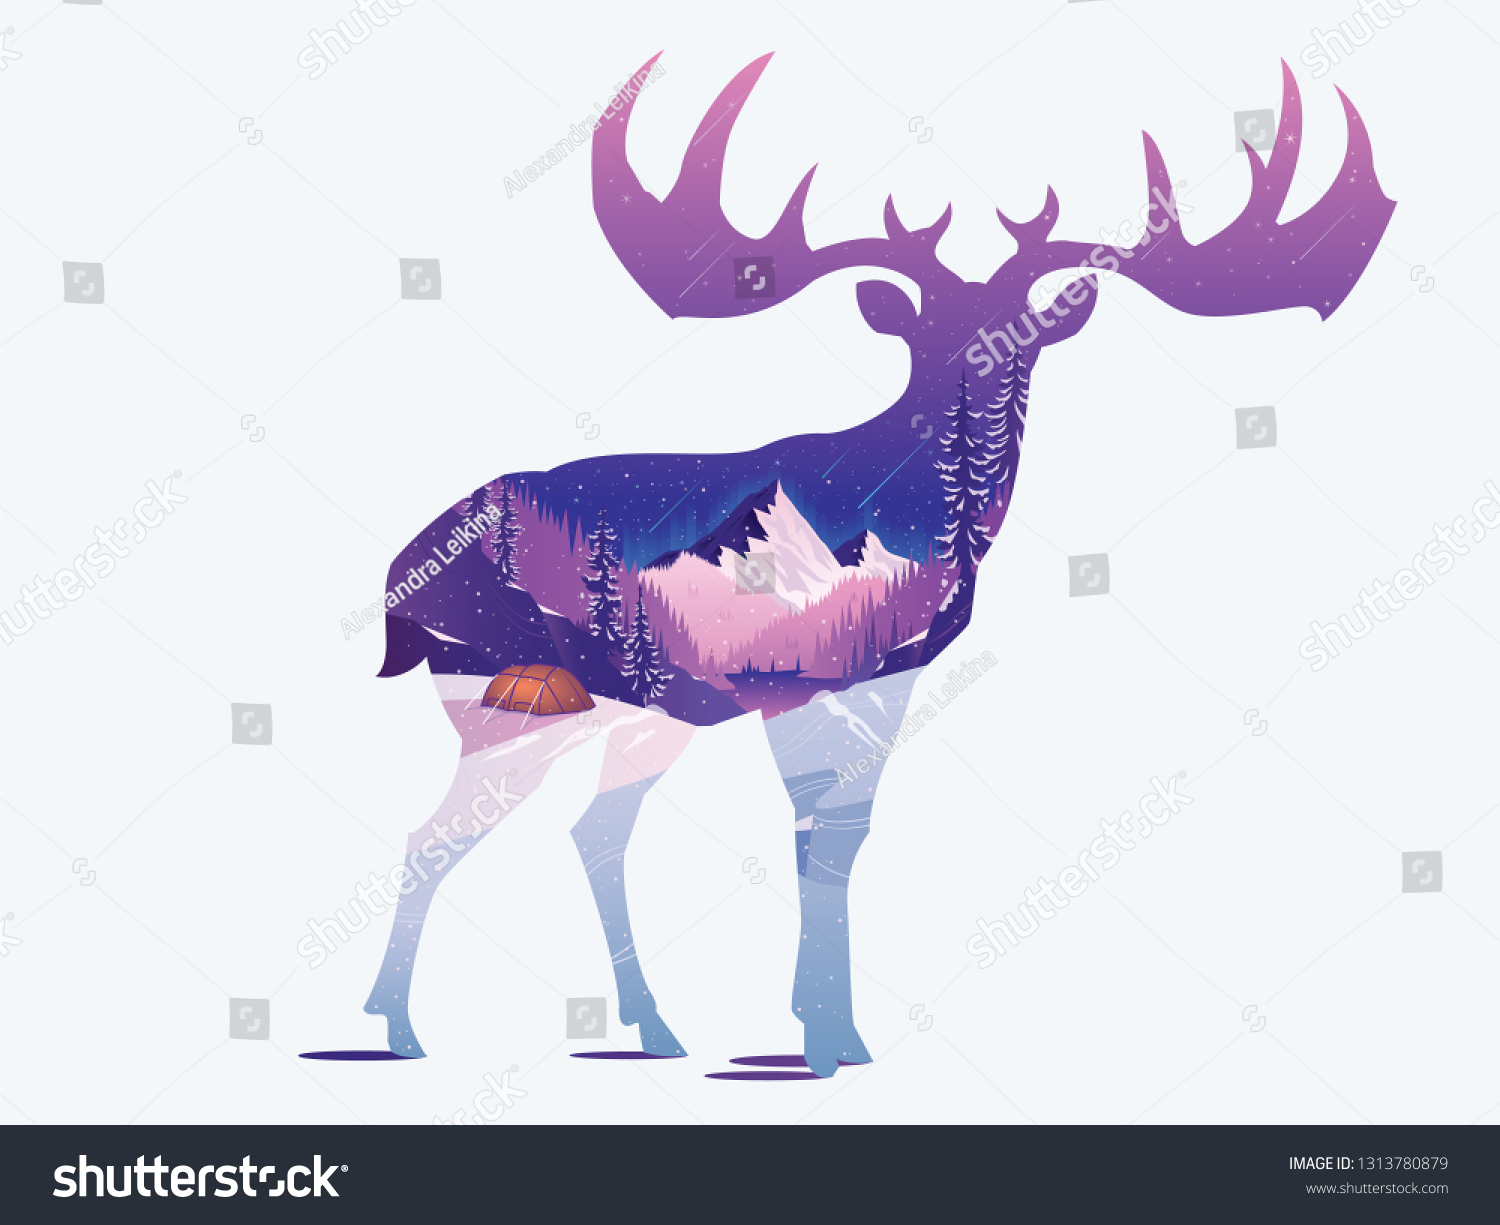 森の背景に鹿のシルエット 鹿 魚卵 森の孤立した輪郭 水彩イラスト デザイン 動物のポートレート 野生生物 のイラスト素材 Shutterstock